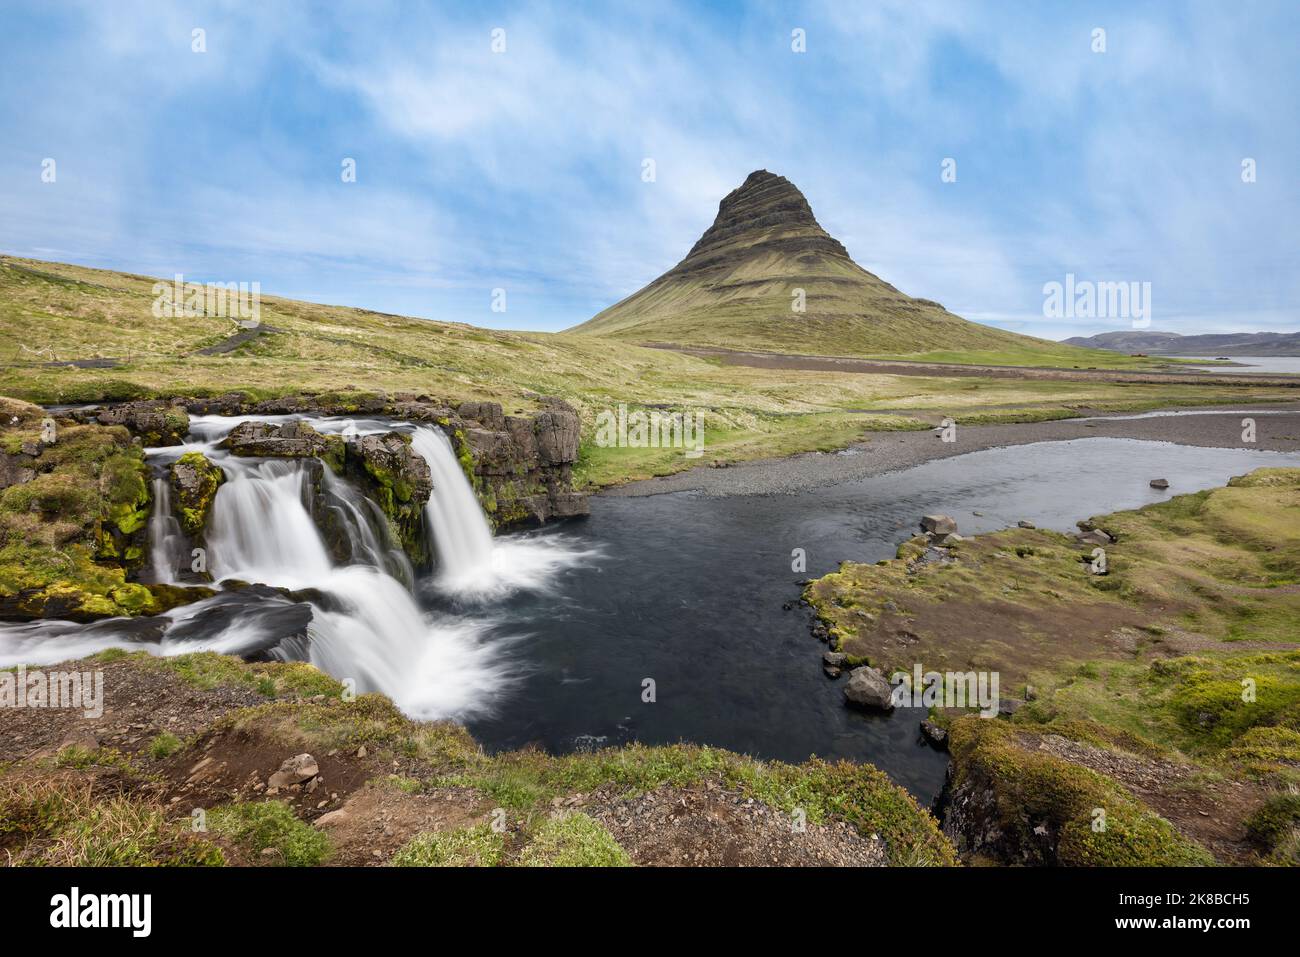 Vue sur la chute d'eau de Kirkjufellsfoss célèbre et populaire lieu touristique en Islande Banque D'Images